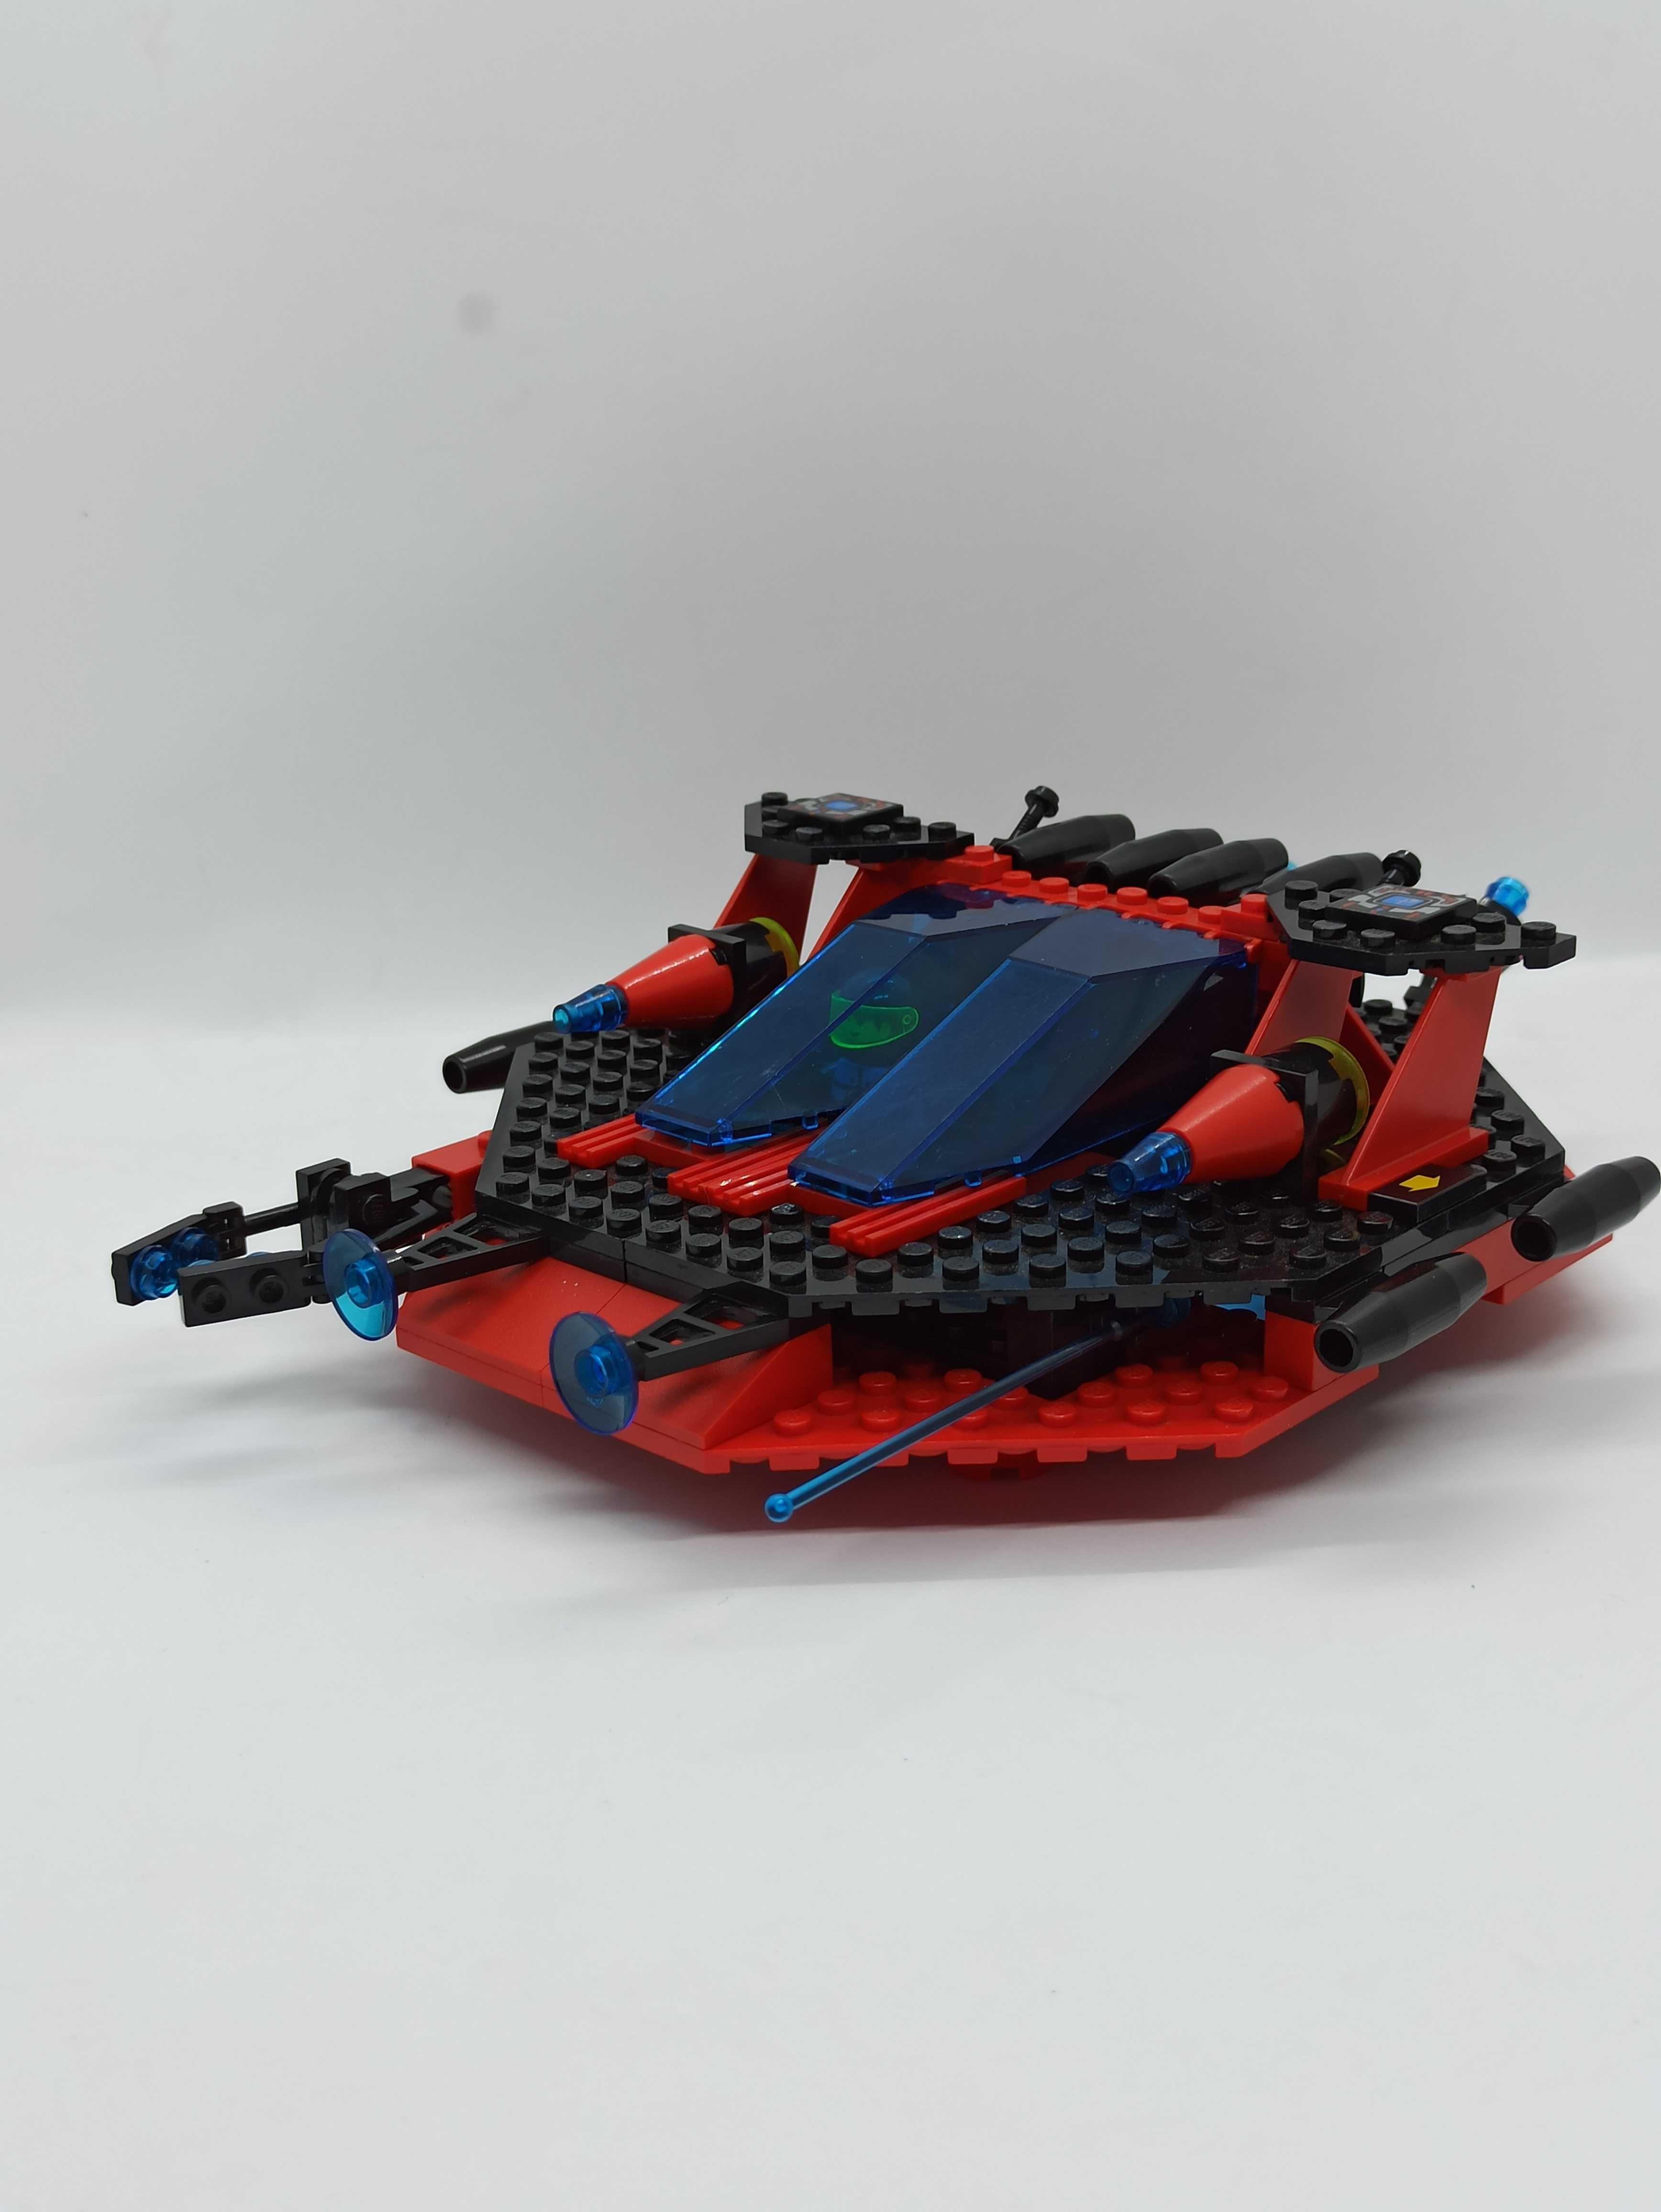 Lego 6939 Saucer Centurion